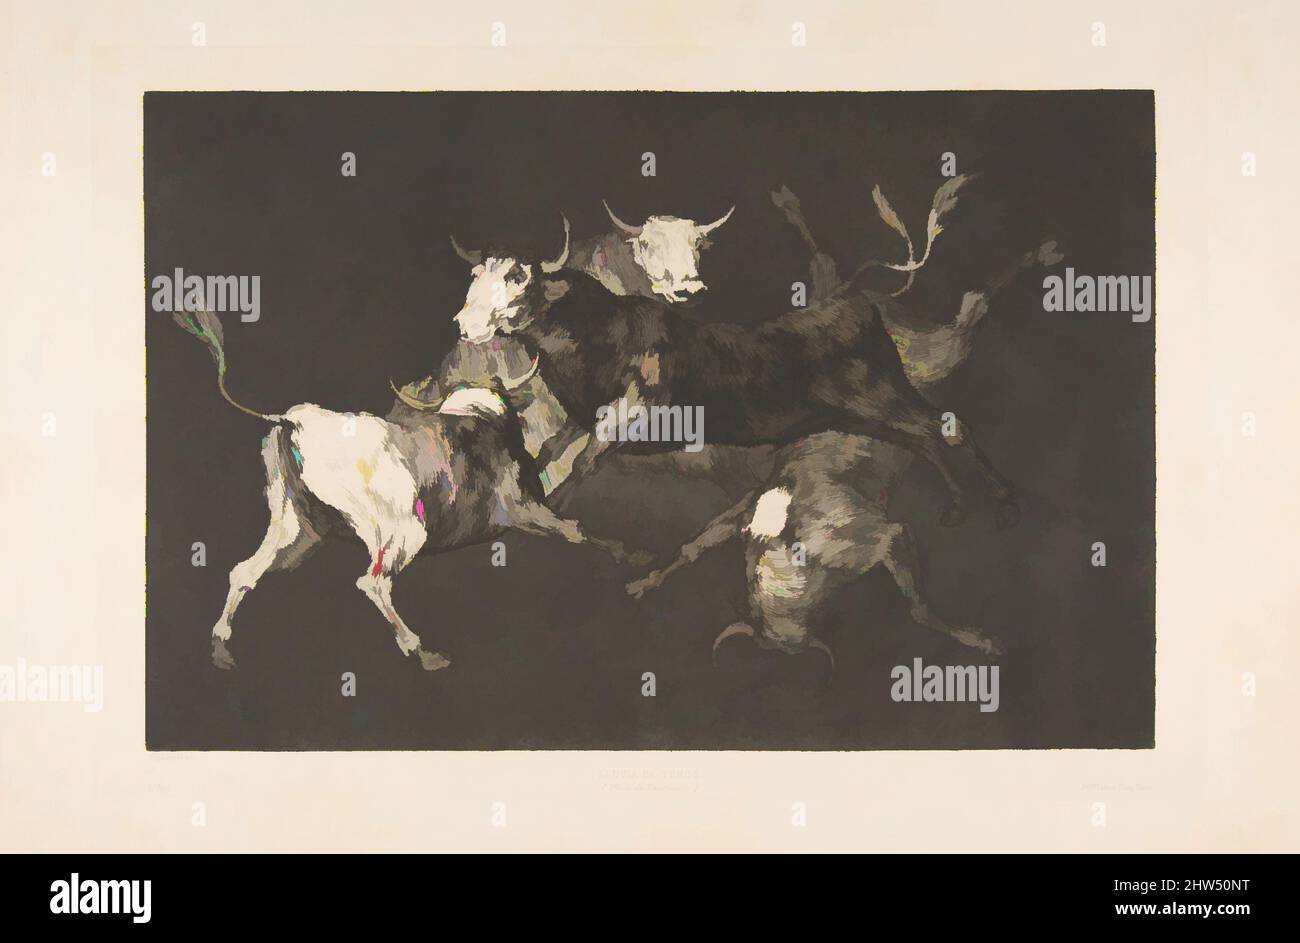 Art inspiré par la plate-forme D des 'Disparates' : les sofols-'or Little Bulls' - folie, ca. 1816–23 (publié en 1877), décapage, aquatint et point sec, plaque : 9 5/8 × 13 3/4 po. (24,5 × 35 cm), Prints, Goya (Francisco de Goya y Lucientes) (espagnol, Fuendetodos 1746–1828 Bordeaux), une des œuvres classiques modernisées par Artotop avec une touche de modernité. Formes, couleur et valeur, impact visuel accrocheur sur l'art émotions par la liberté d'œuvres d'art d'une manière contemporaine. Un message intemporel qui cherche une nouvelle direction créative. Artistes qui se tournent vers le support numérique et créent le NFT Artotop Banque D'Images